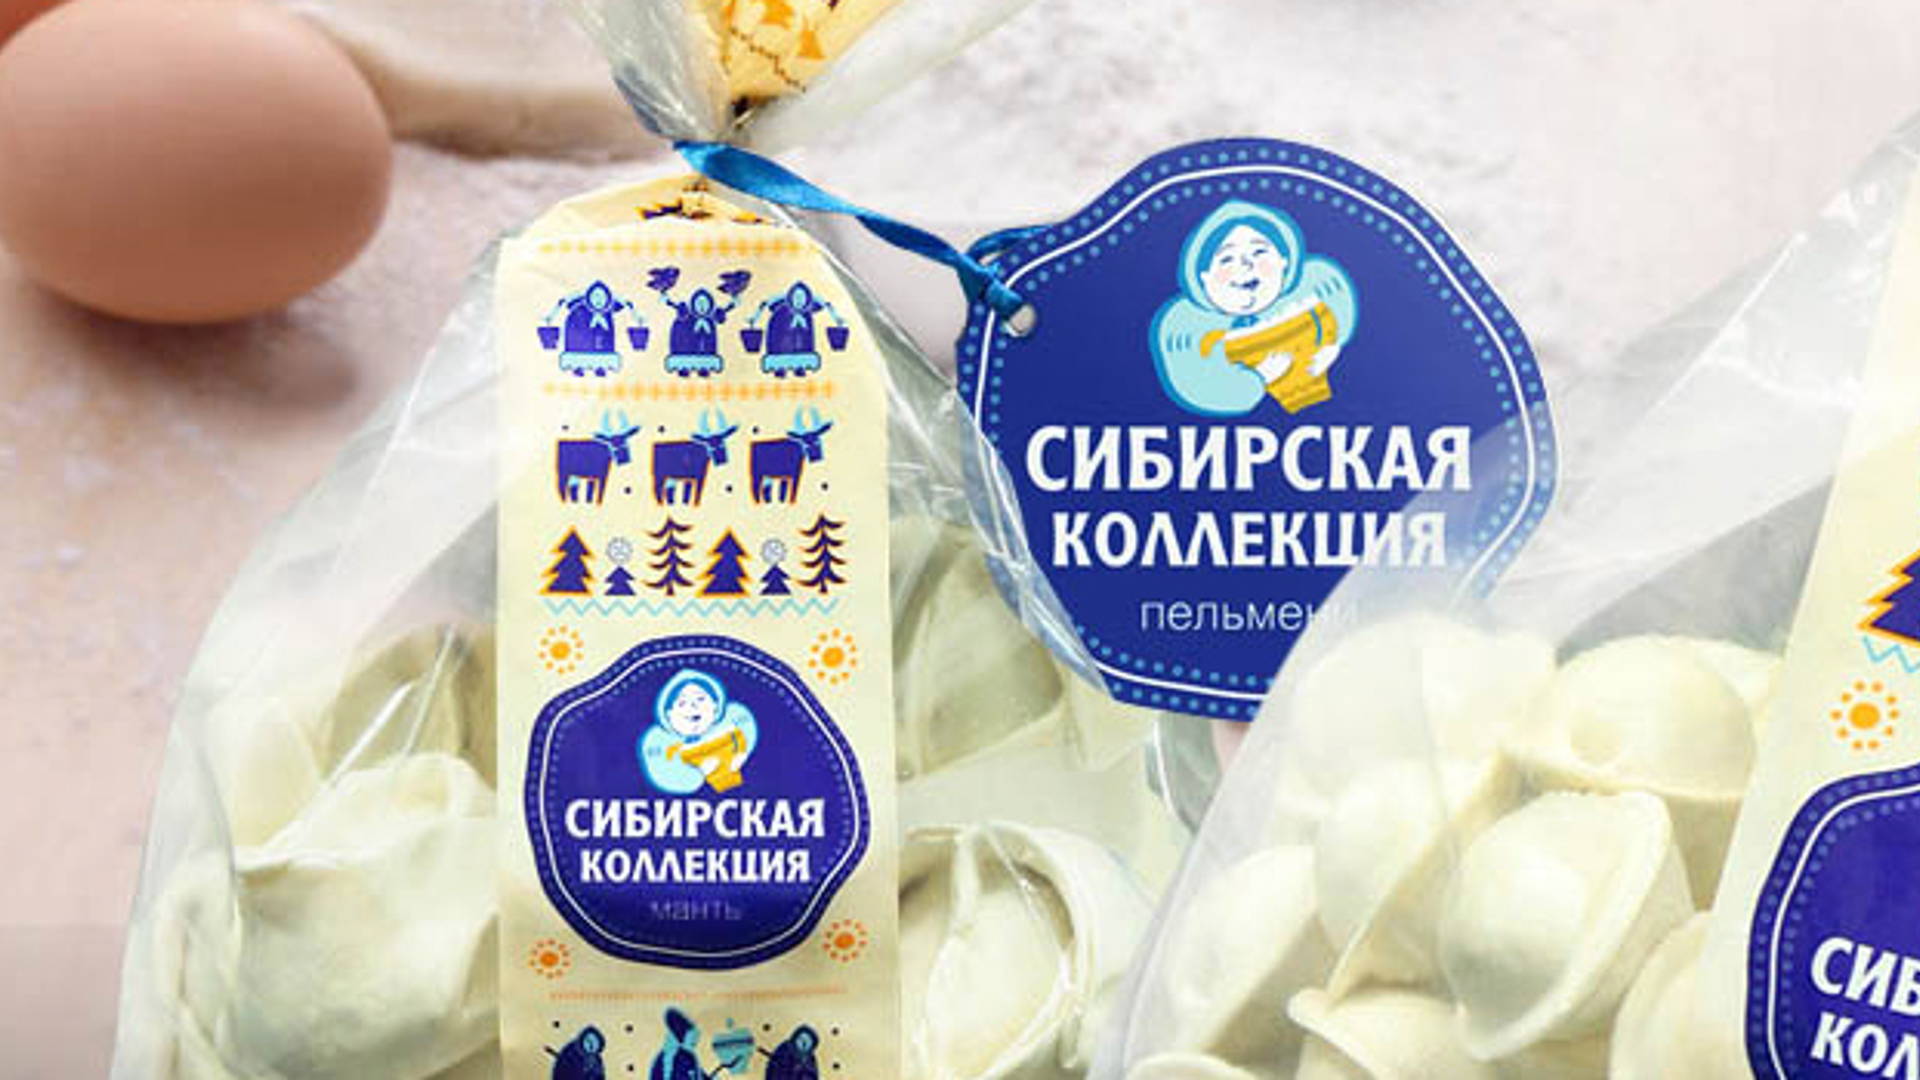 Featured image for Sibirskaya Collectsiya: Russian Pelmeni